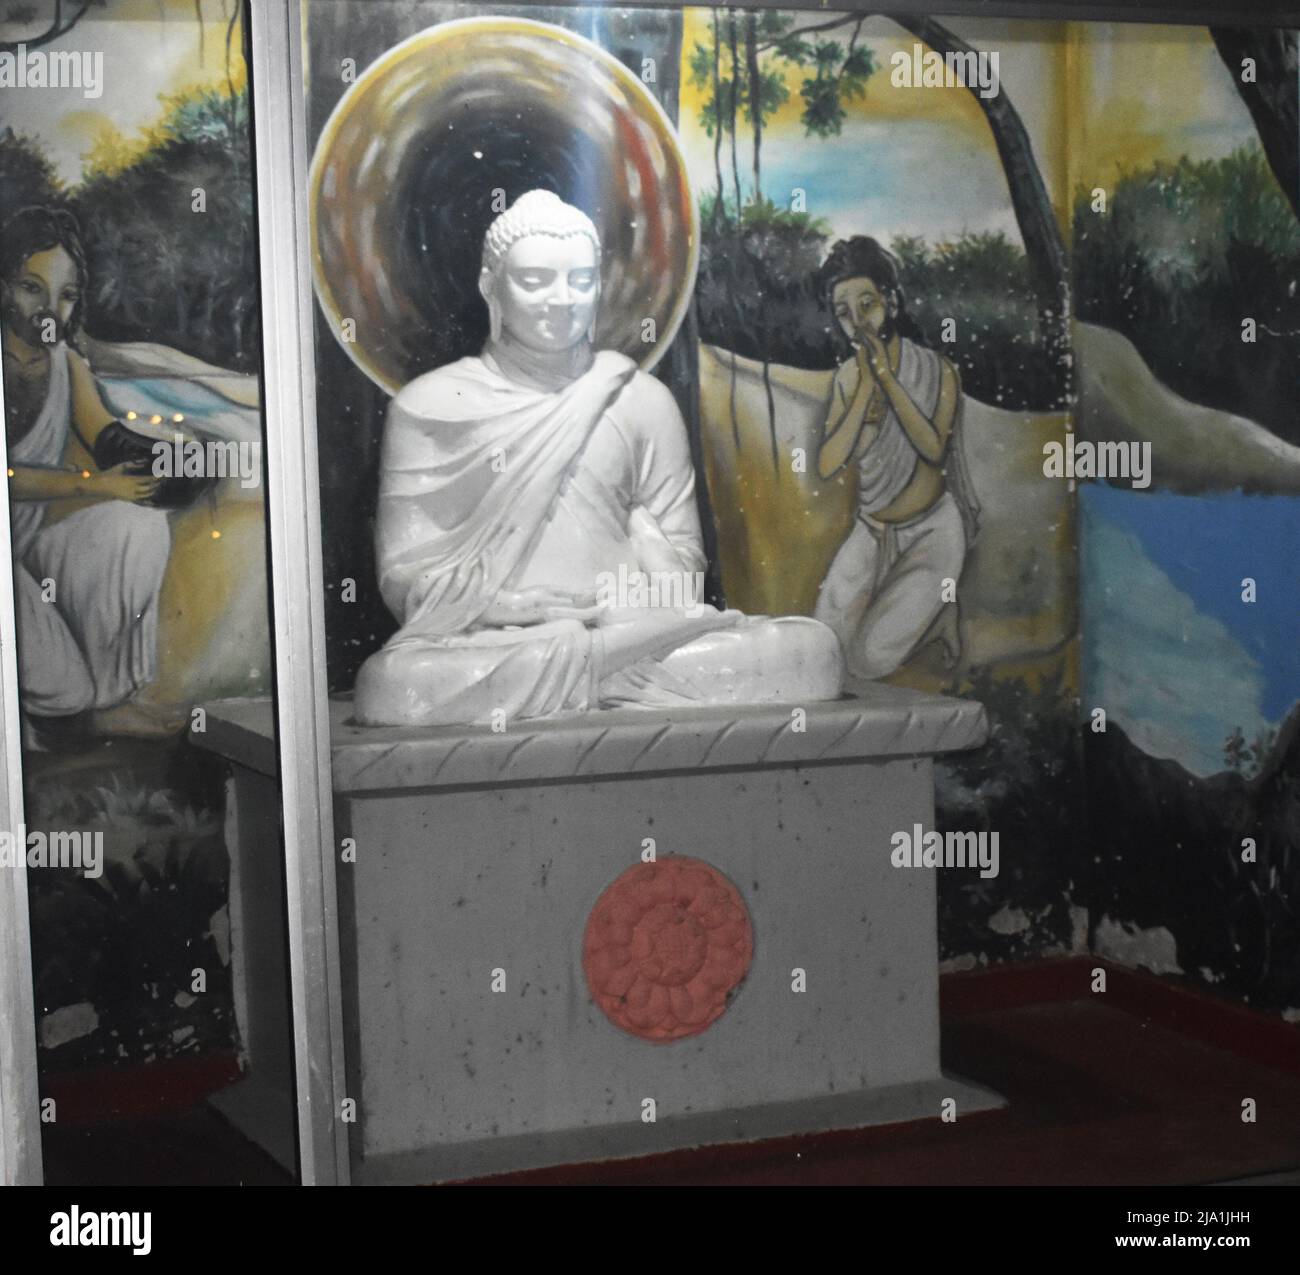 Une statue de Bouddha à un temple. Gautama Bouddha était un professeur ascétique et spirituel de l'Inde ancienne qui a vécu pendant la seconde moitié du premier millénaire BCE. Il a été le fondateur du bouddhisme et est vénéré par les bouddhistes comme un être éclairé dont les enseignements cherchaient un chemin vers la liberté de l'ignorance, de la soif, de la renaissance et de la souffrance. Colombo, Sri Lanka. Banque D'Images